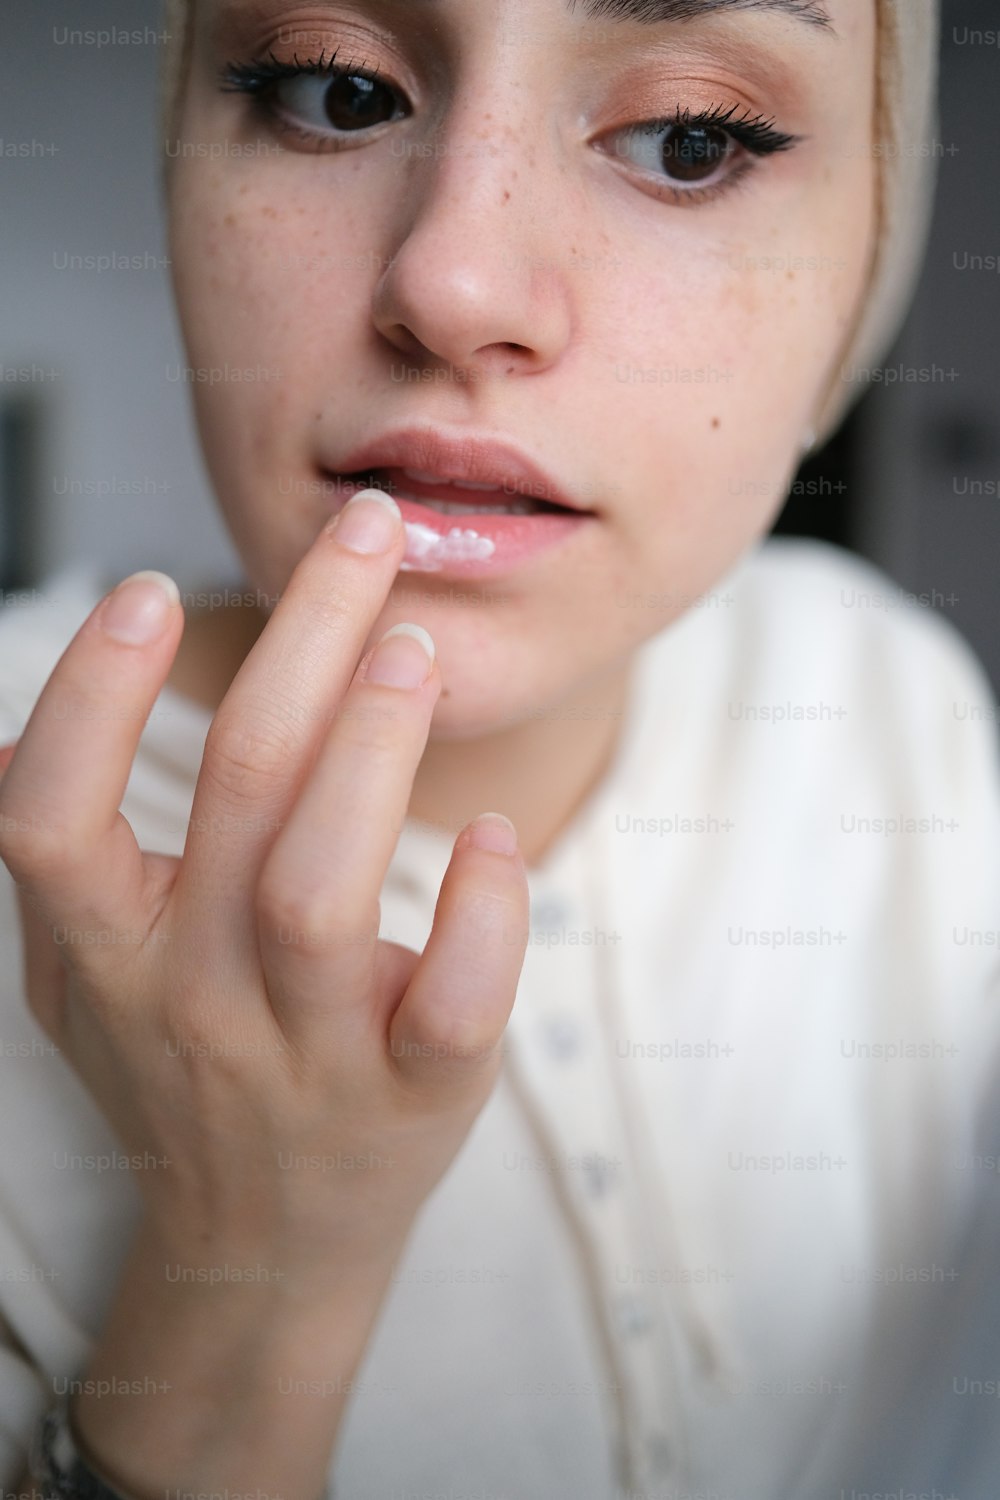 um close up de uma pessoa com um anel no dedo